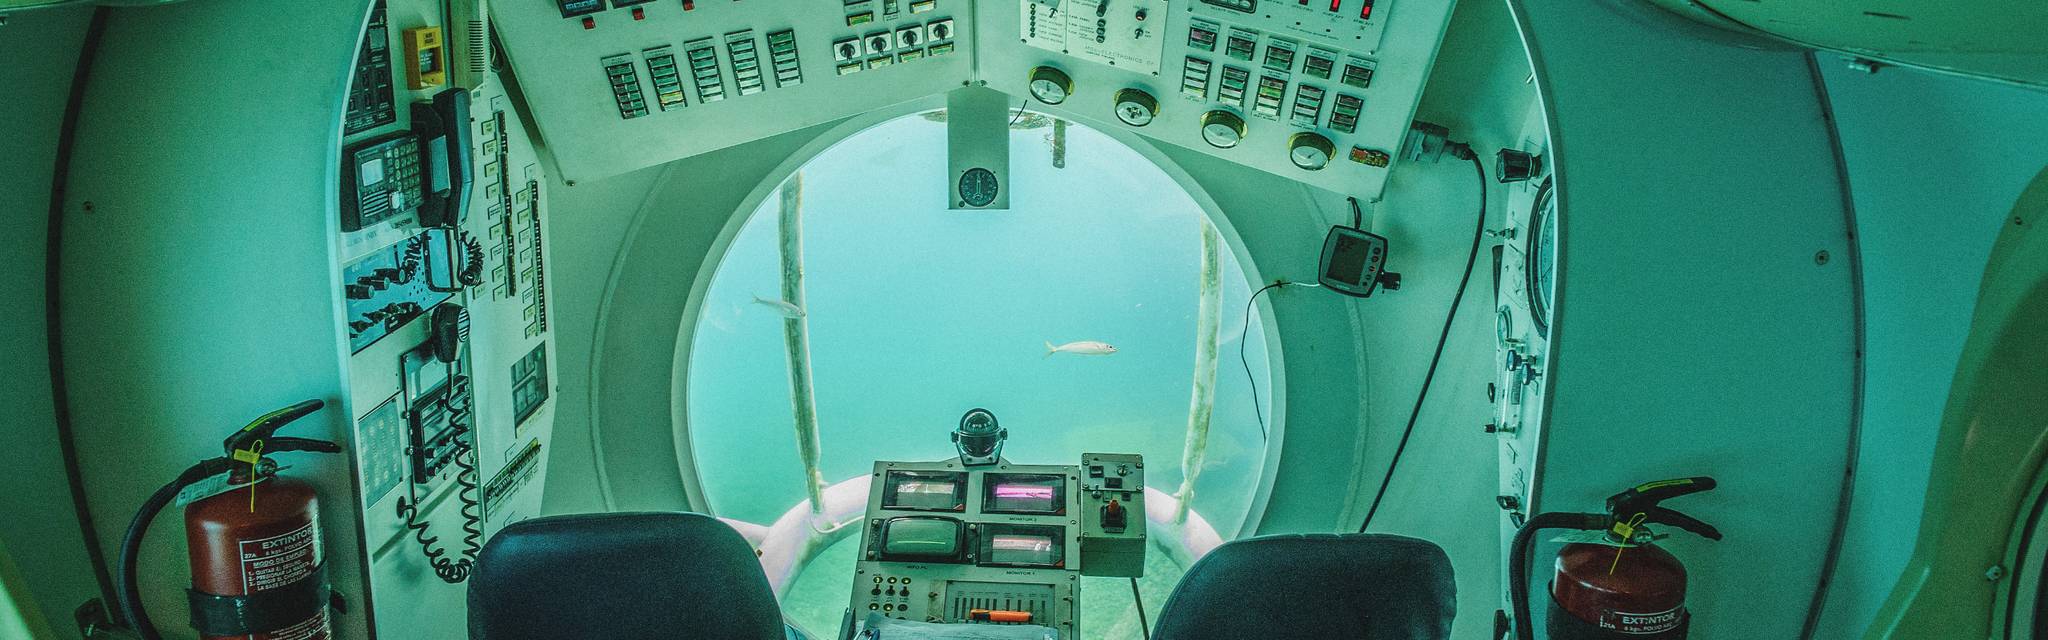 Innenansicht eines U-Boots. Durch ein Fenster sind Fische zu sehen.